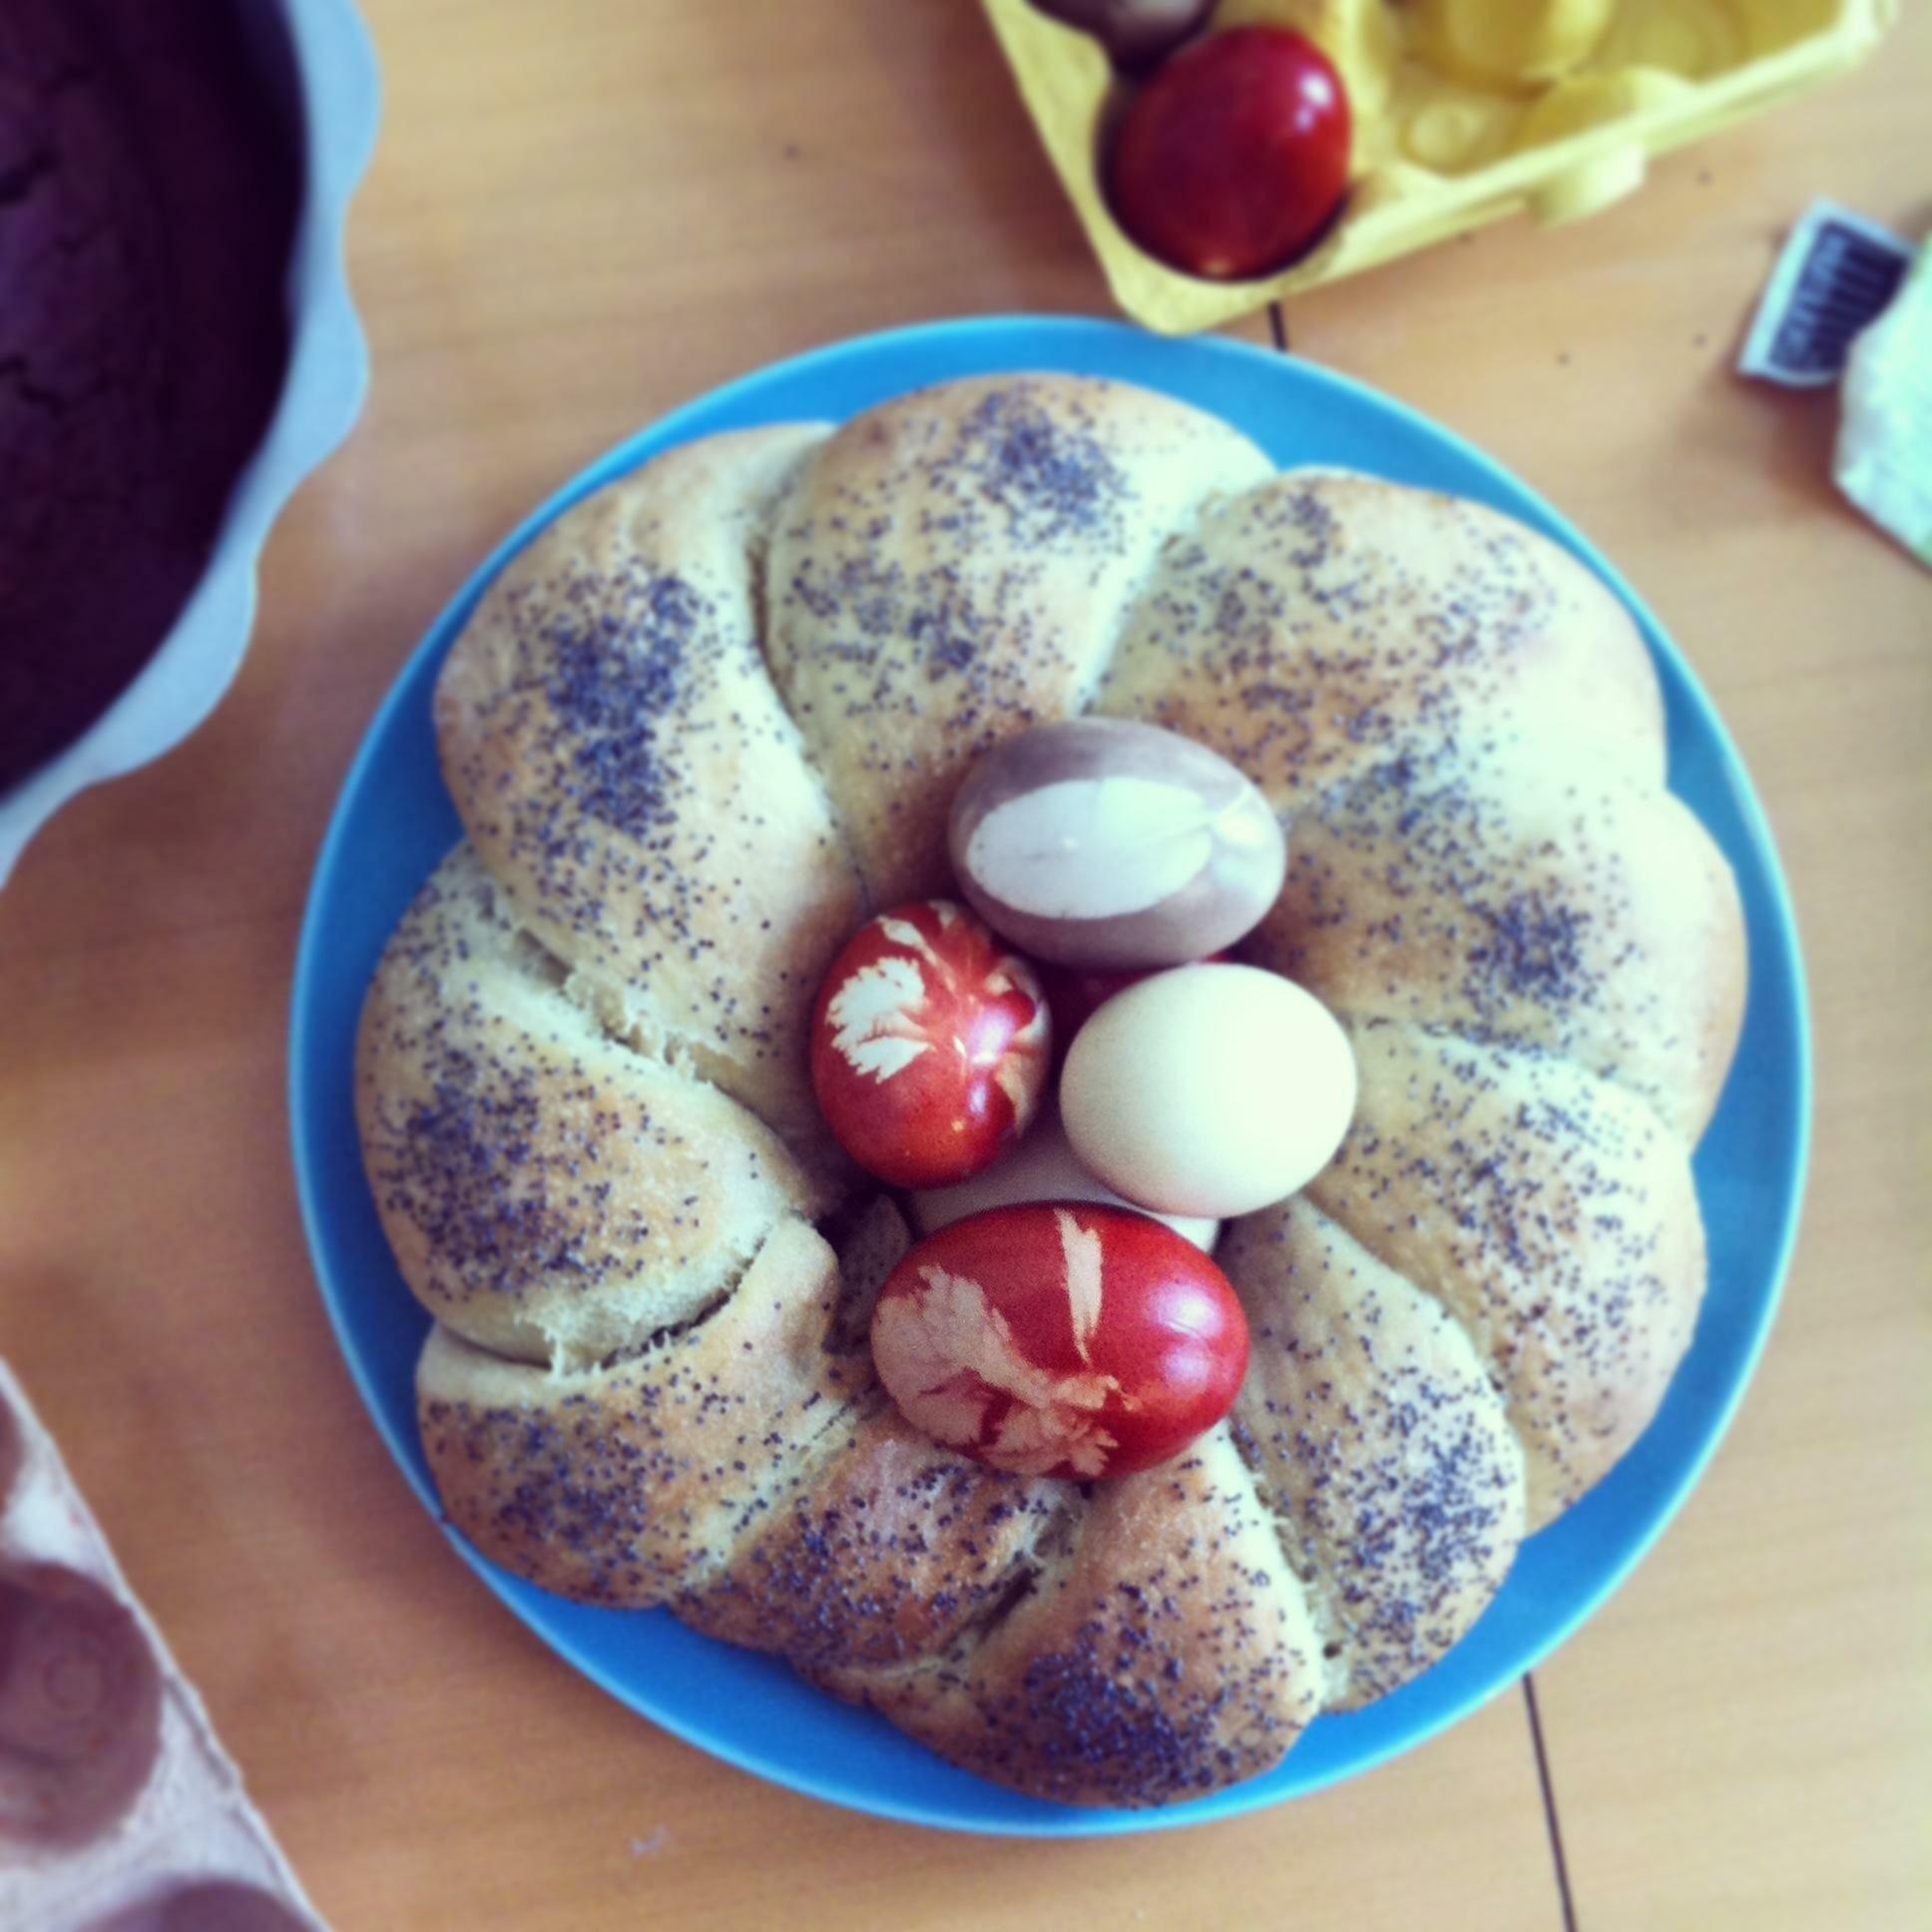 #osterei #osterdiy #naturfarben #cake #frühstück

Mohnkranz mit natürlich gefärbten Eiern von Omas glücklichen Hühnern